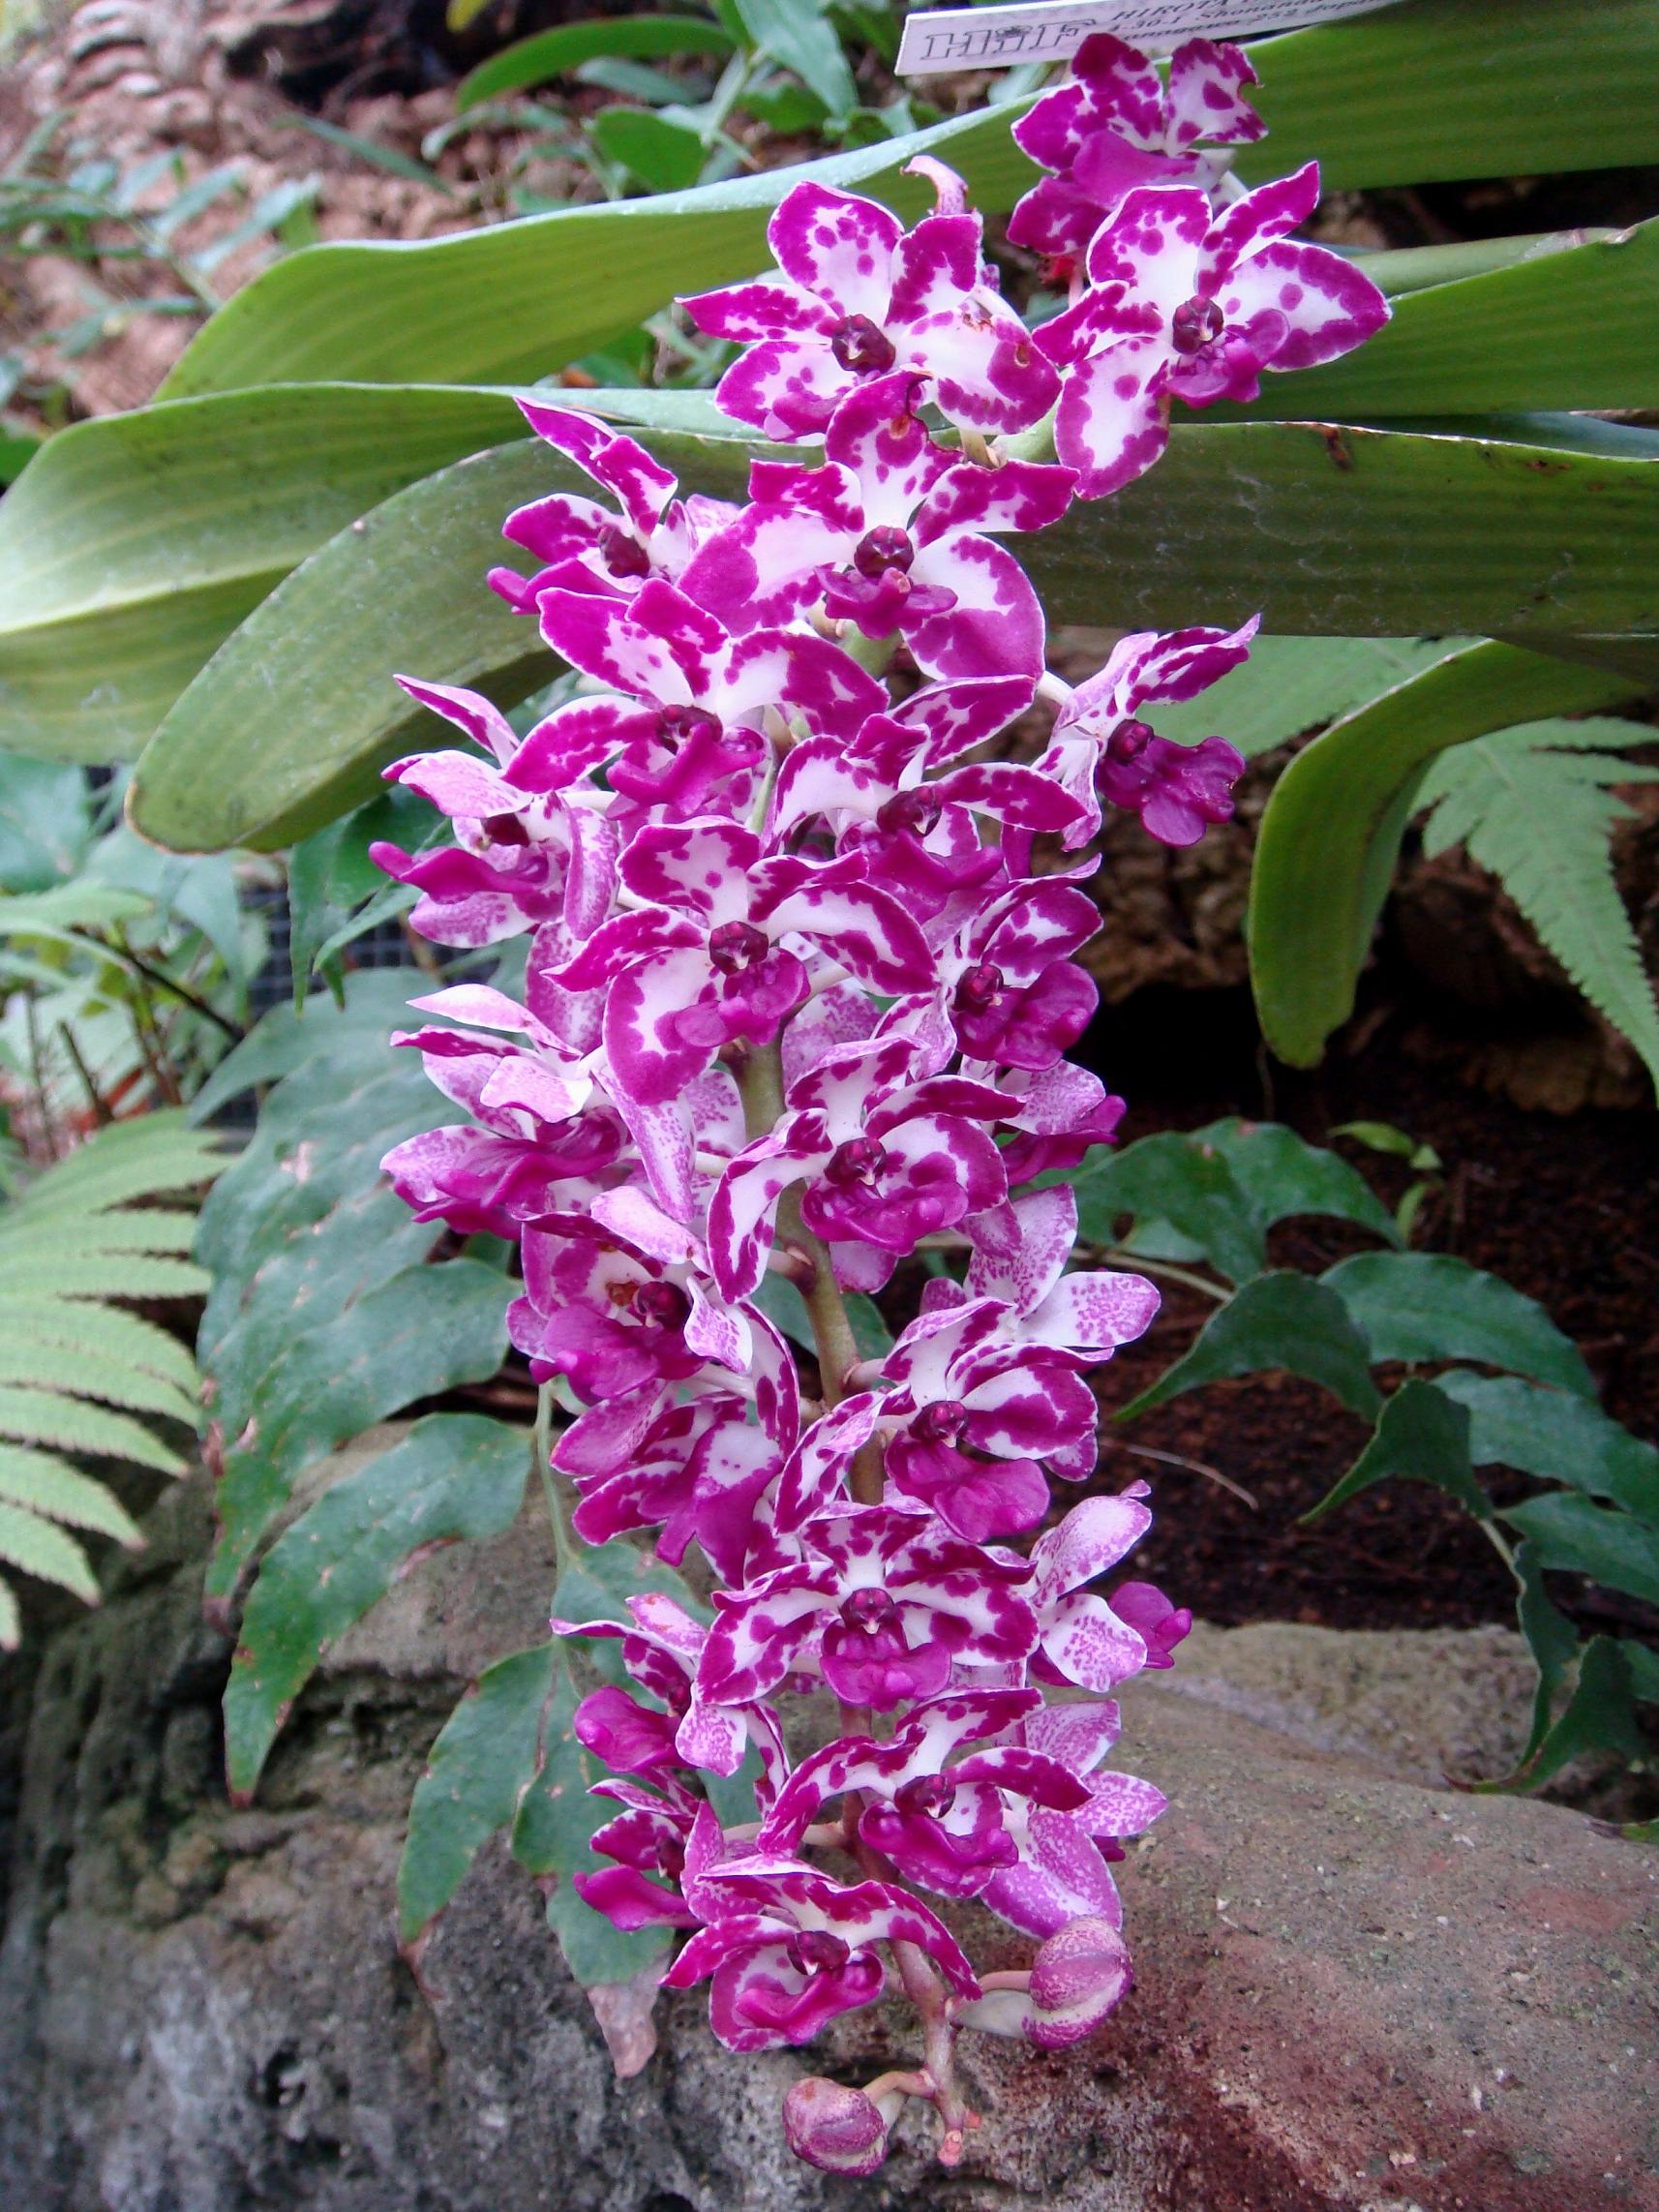 http://hybridorchid.la.coocan.jp/Rhynchostylis/Rhynchostylis%20Chorchalood/DSC06509.JPG